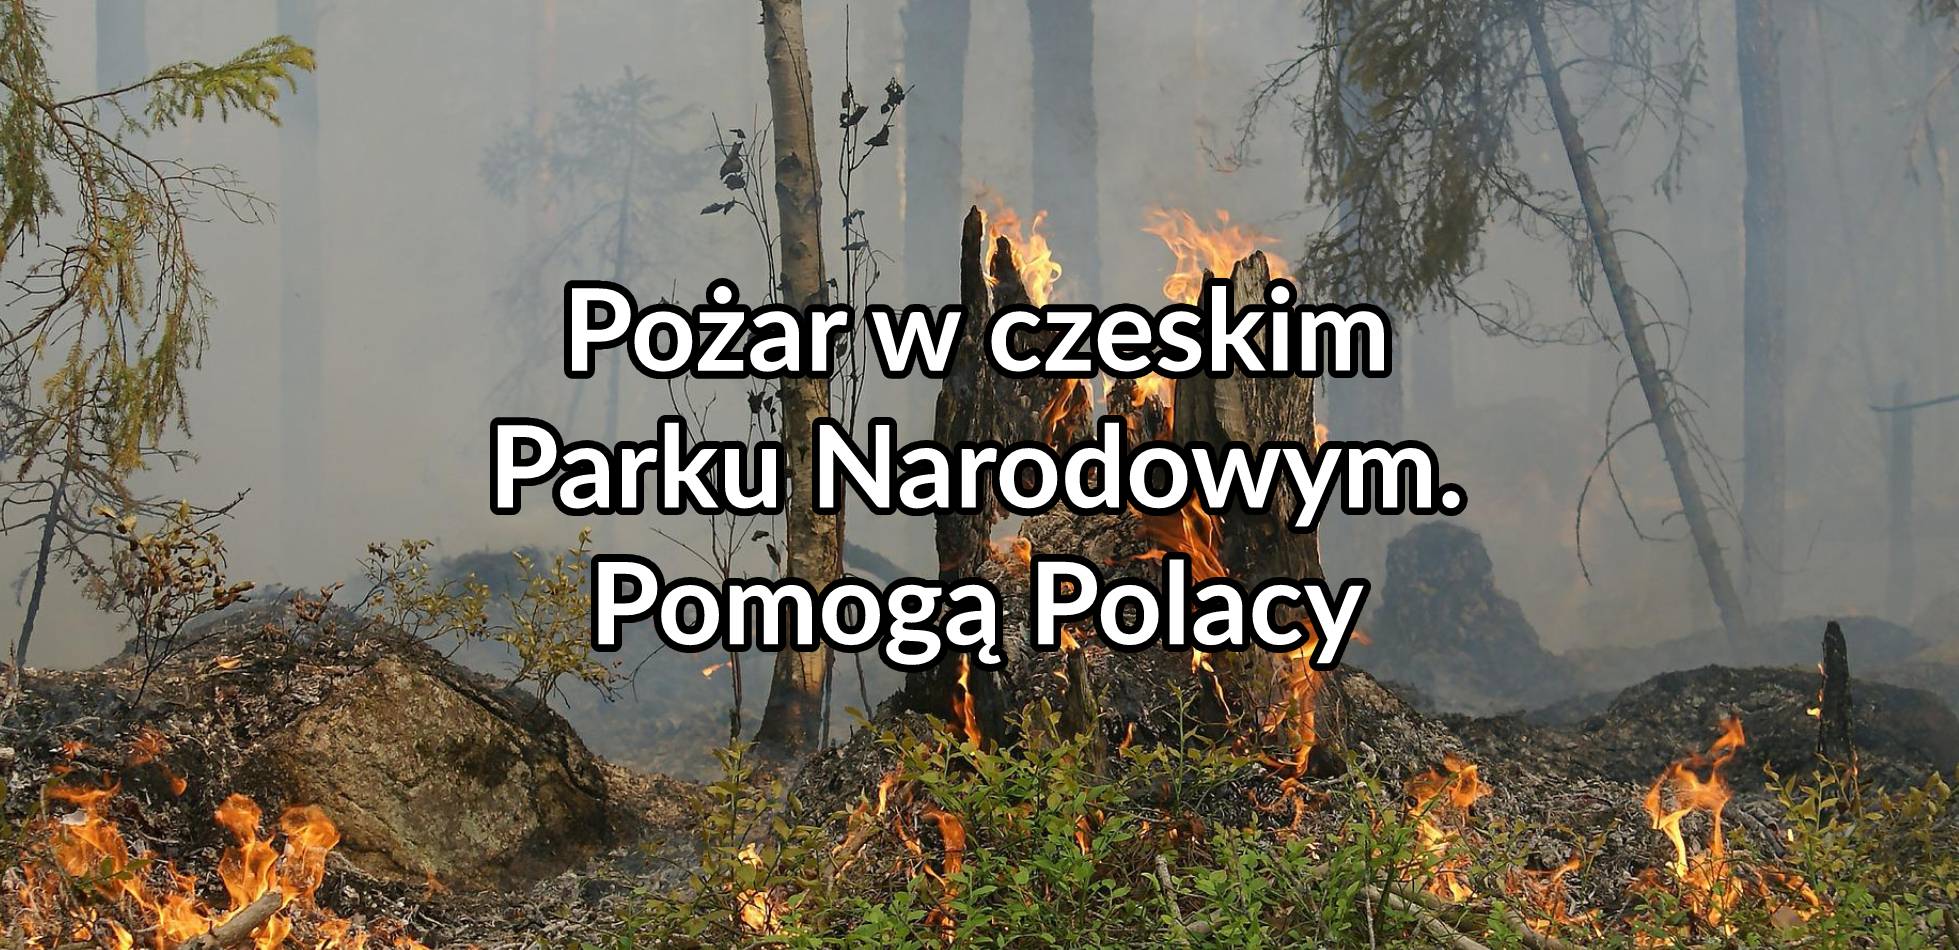 Pożar w czeskim parku narodowym. Pomogą Polacy